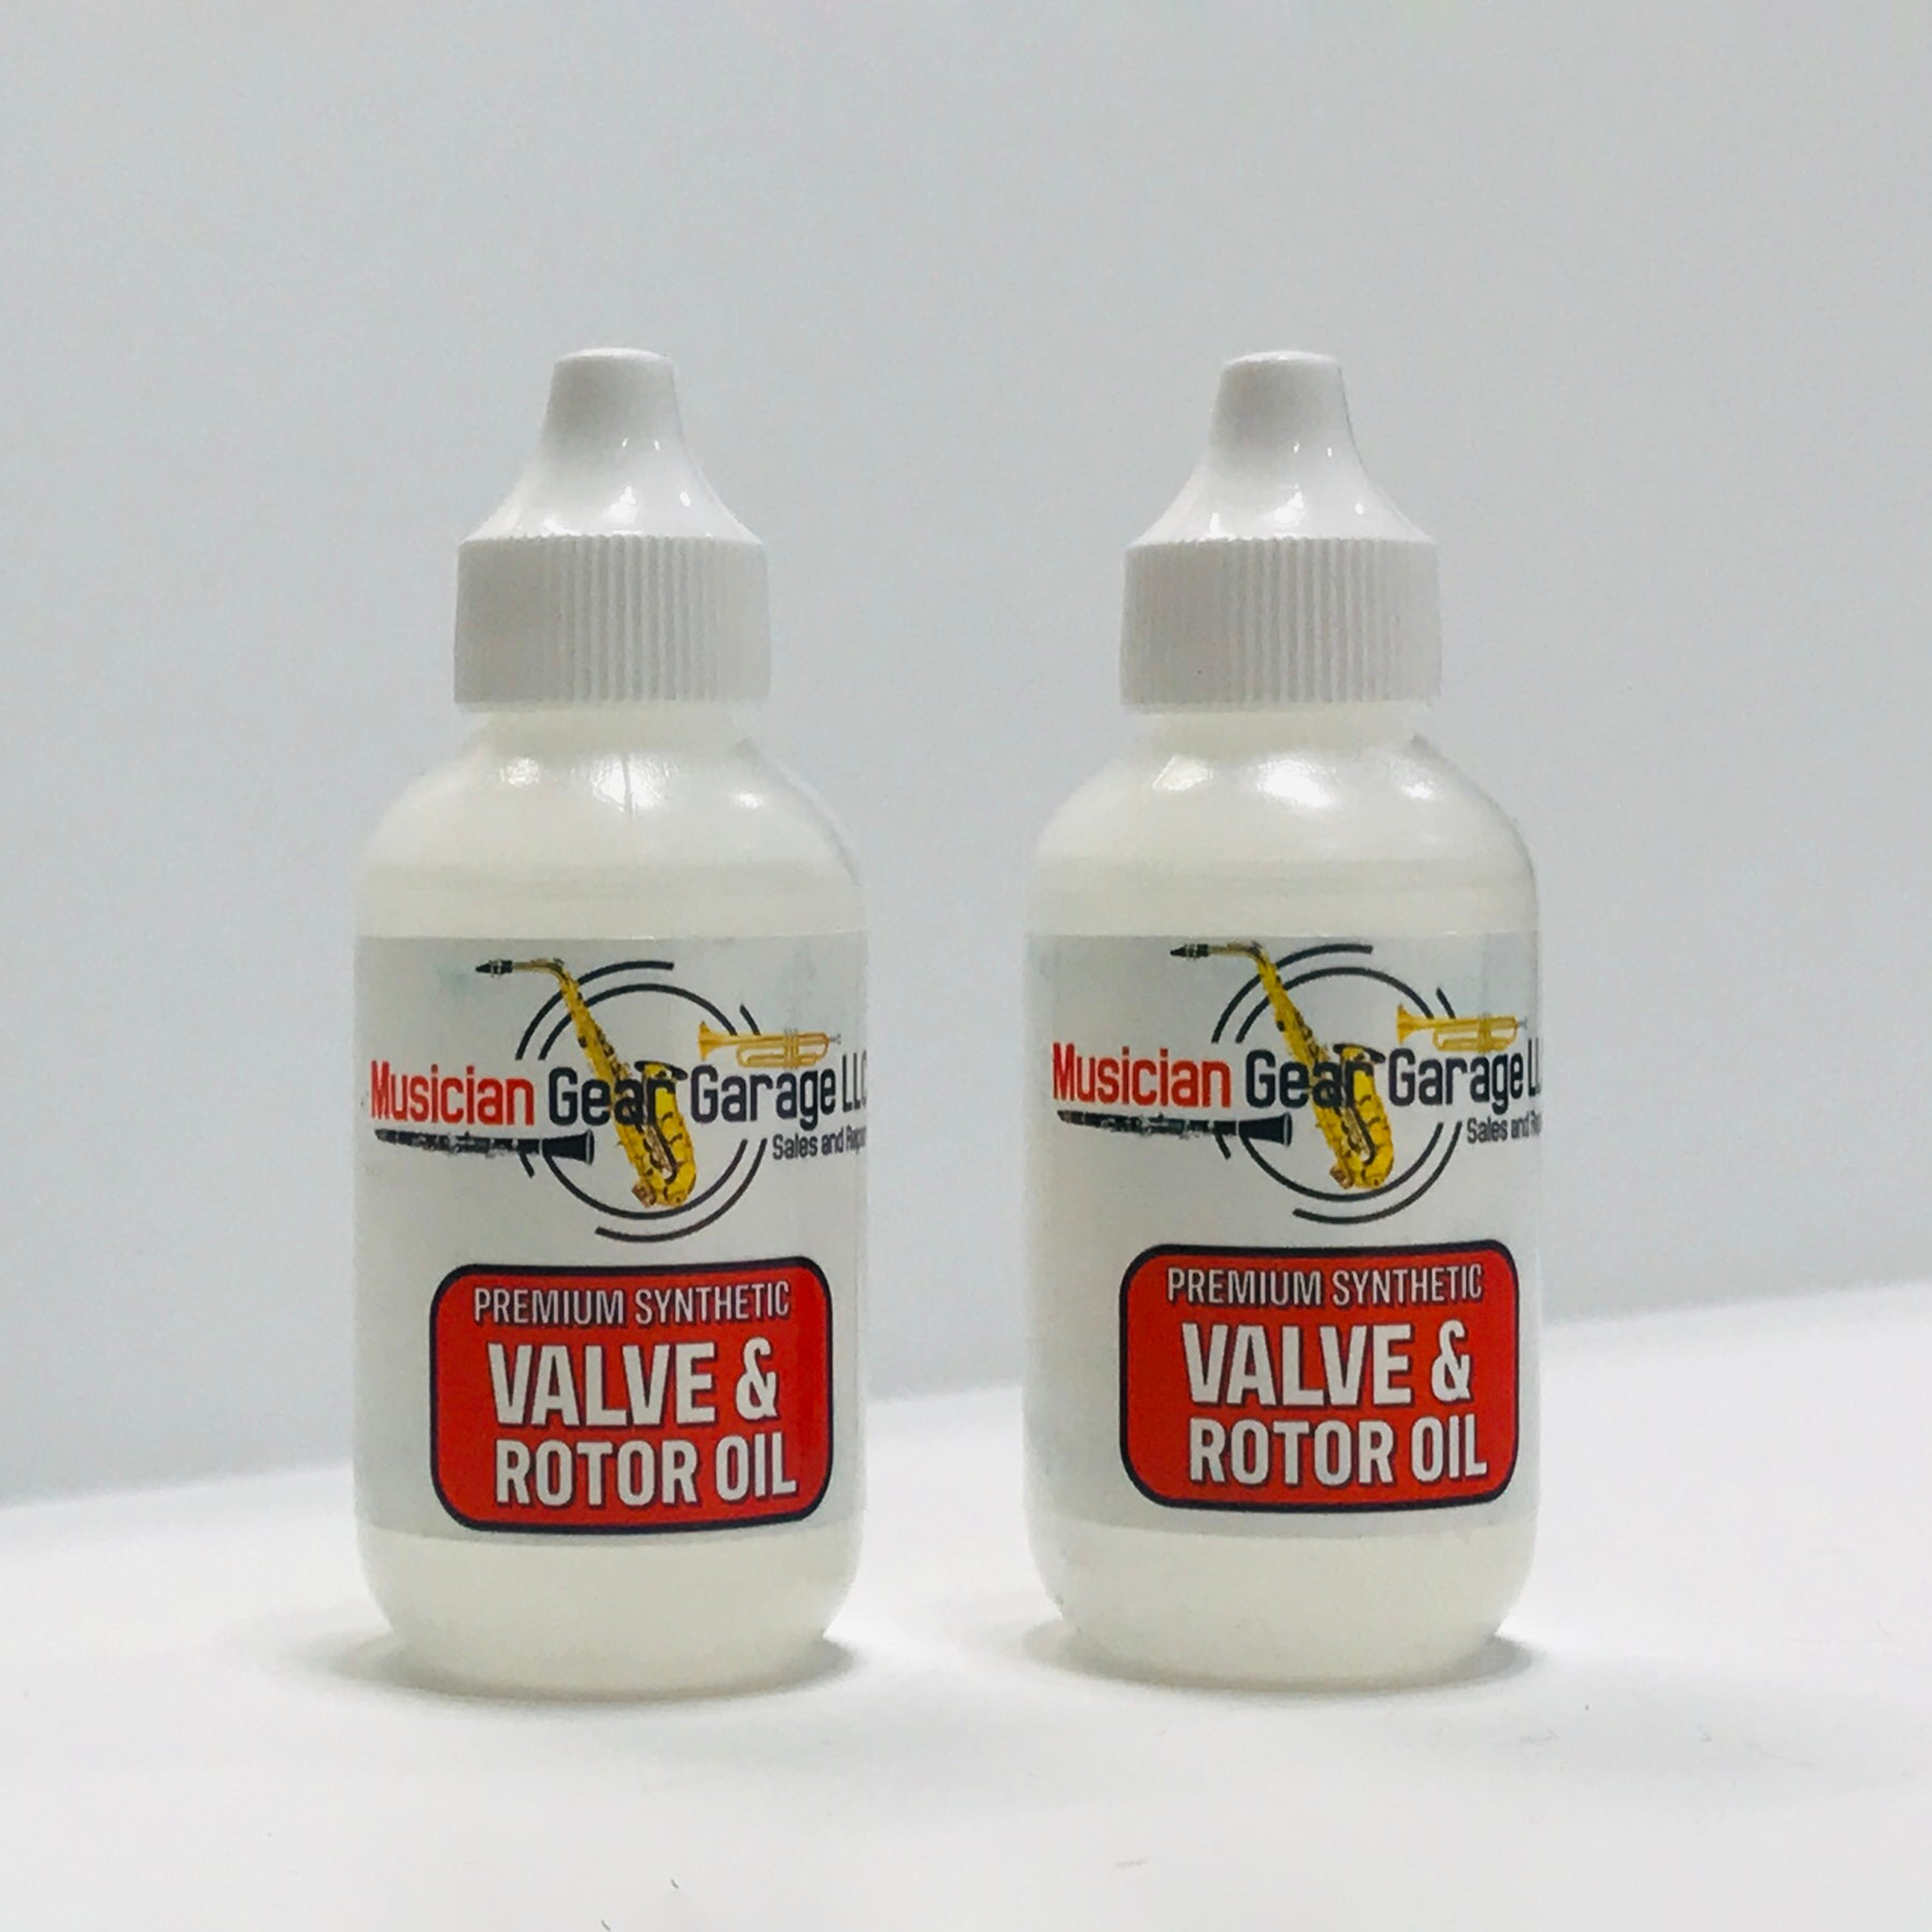 Premium Synthetic Valve & Rotor Oil Light 2 bottles Musician Gear Garage  2oz